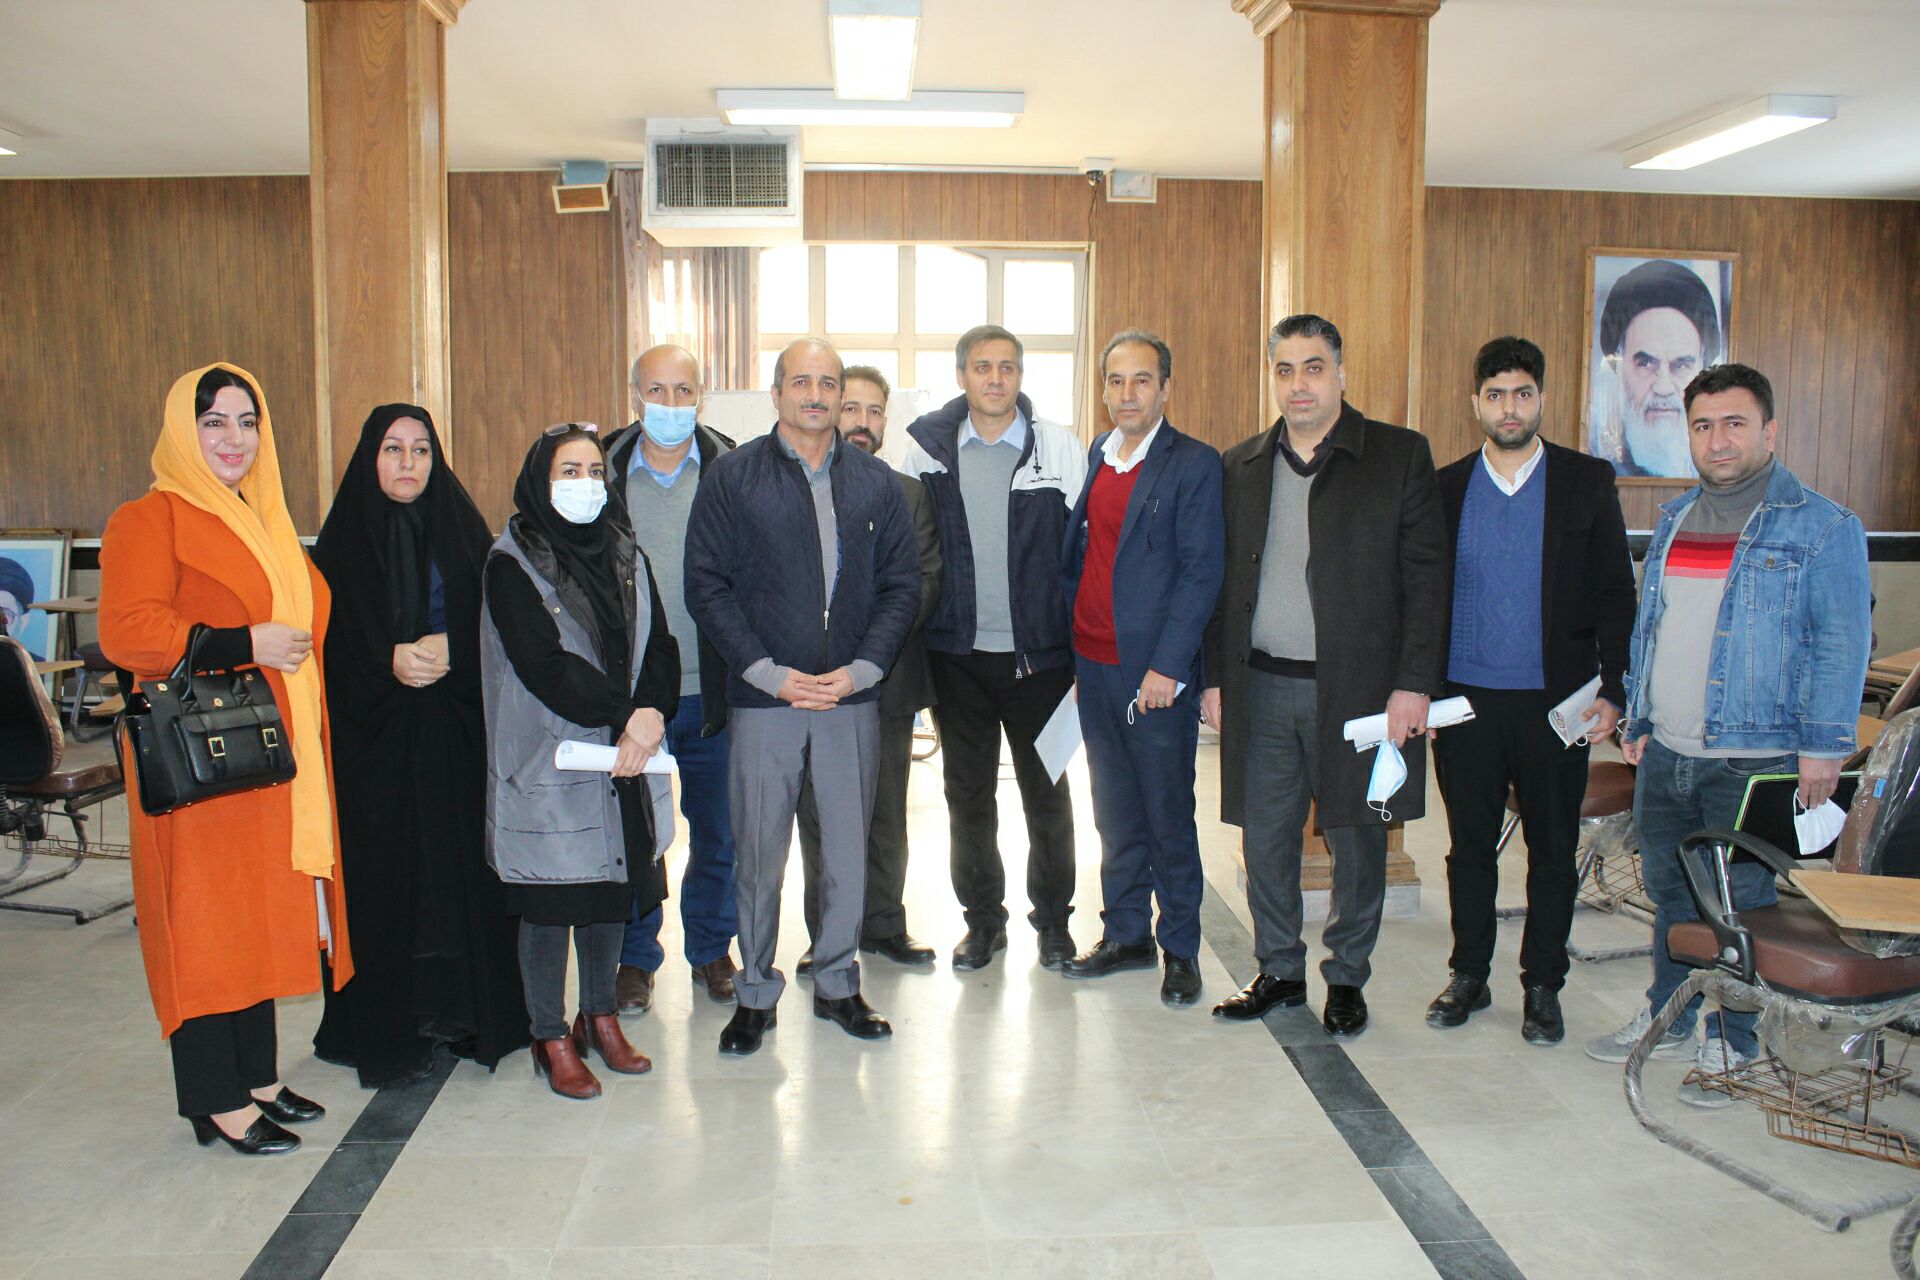 نتیجه انتخابات صنفی اتحادیه خیاطان و تولیدکنندگان پوشاک شهرستان شهریار اعلام شد